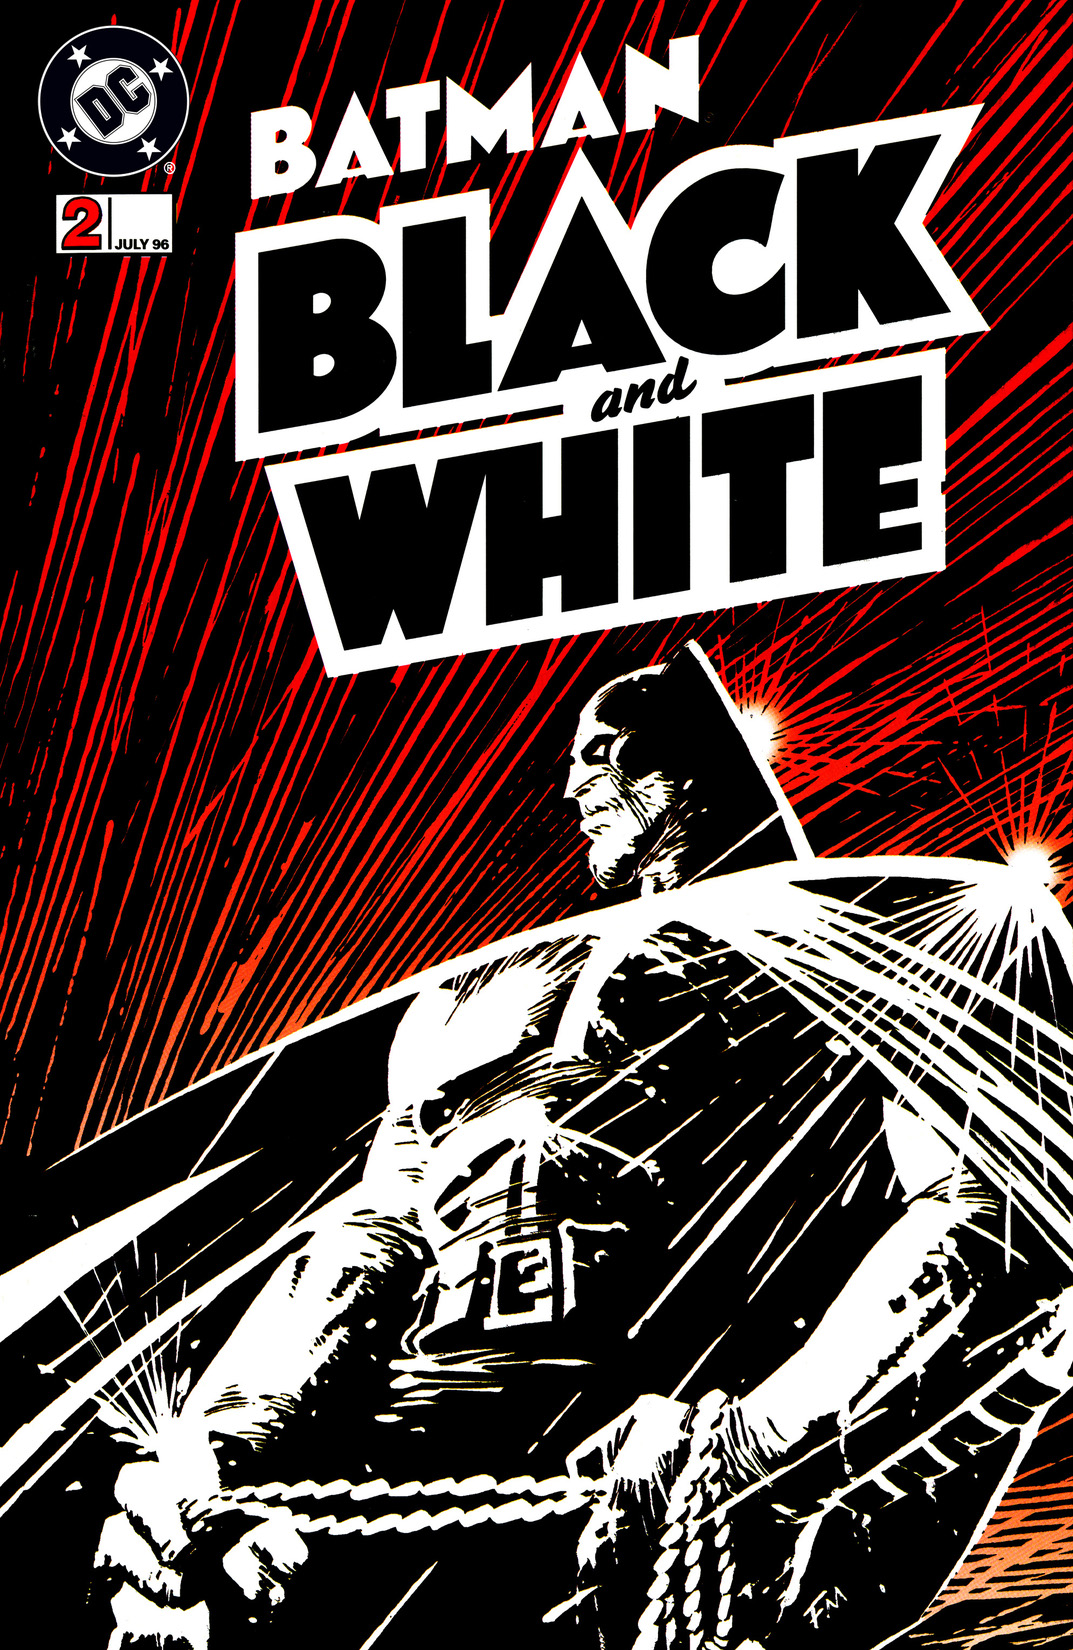 Batman: Black & White (1996-) #2 preview images